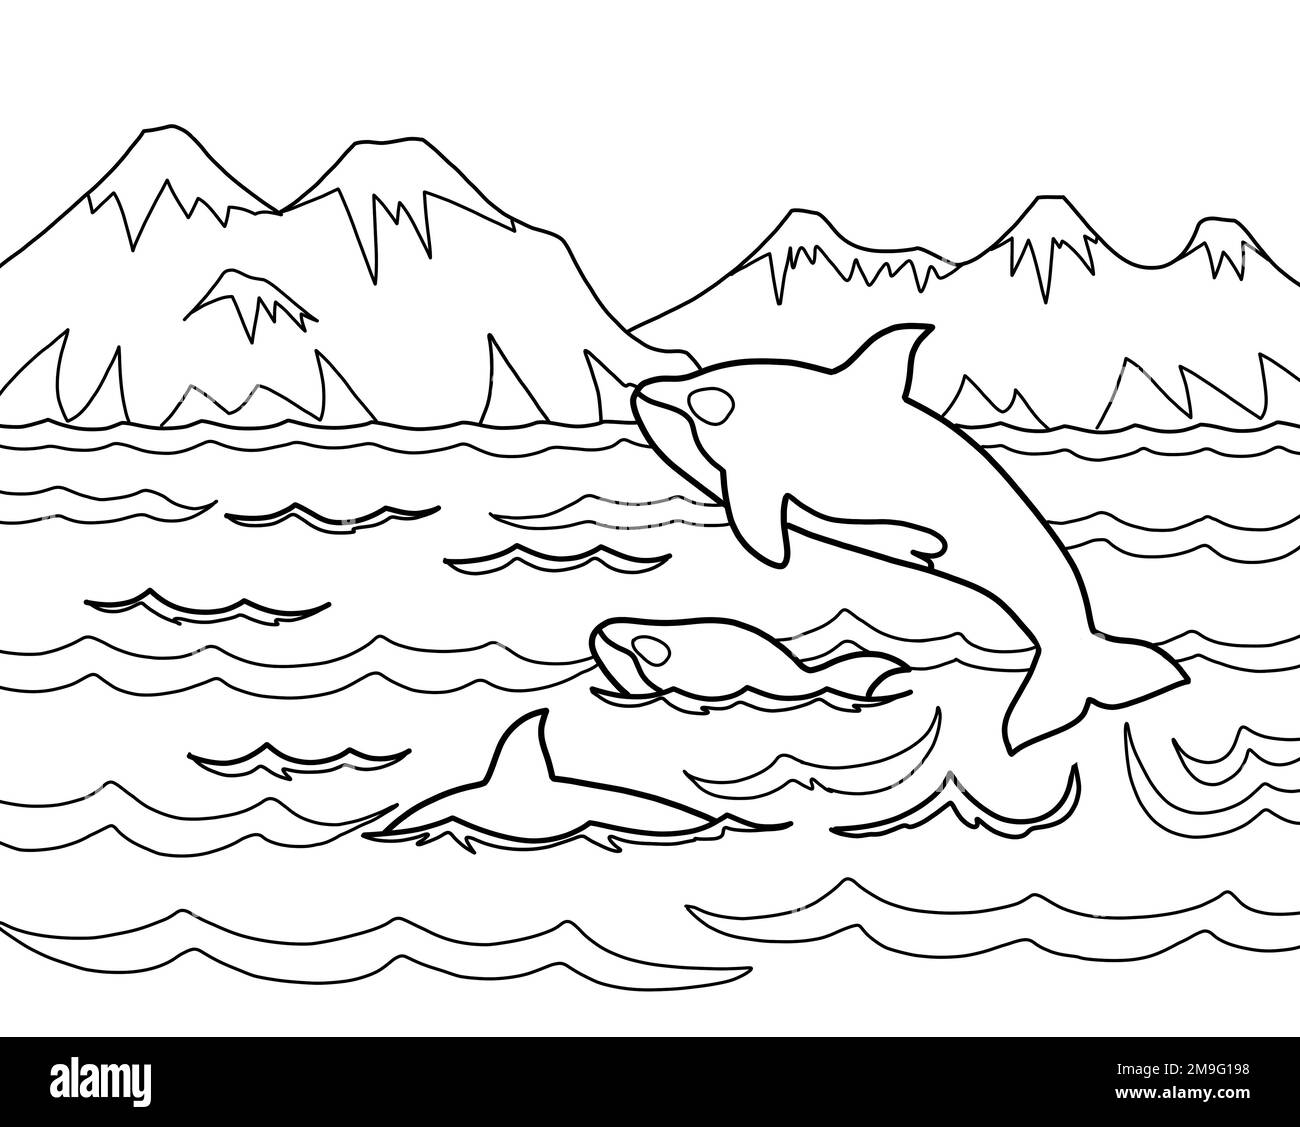 Gousse d'orques ou d'épaulards nageant et sautant dans l'océan Pacifique près de l'île de Vancouver, Canada. Faune nature écotourisme en Amérique du Nord concept Banque D'Images